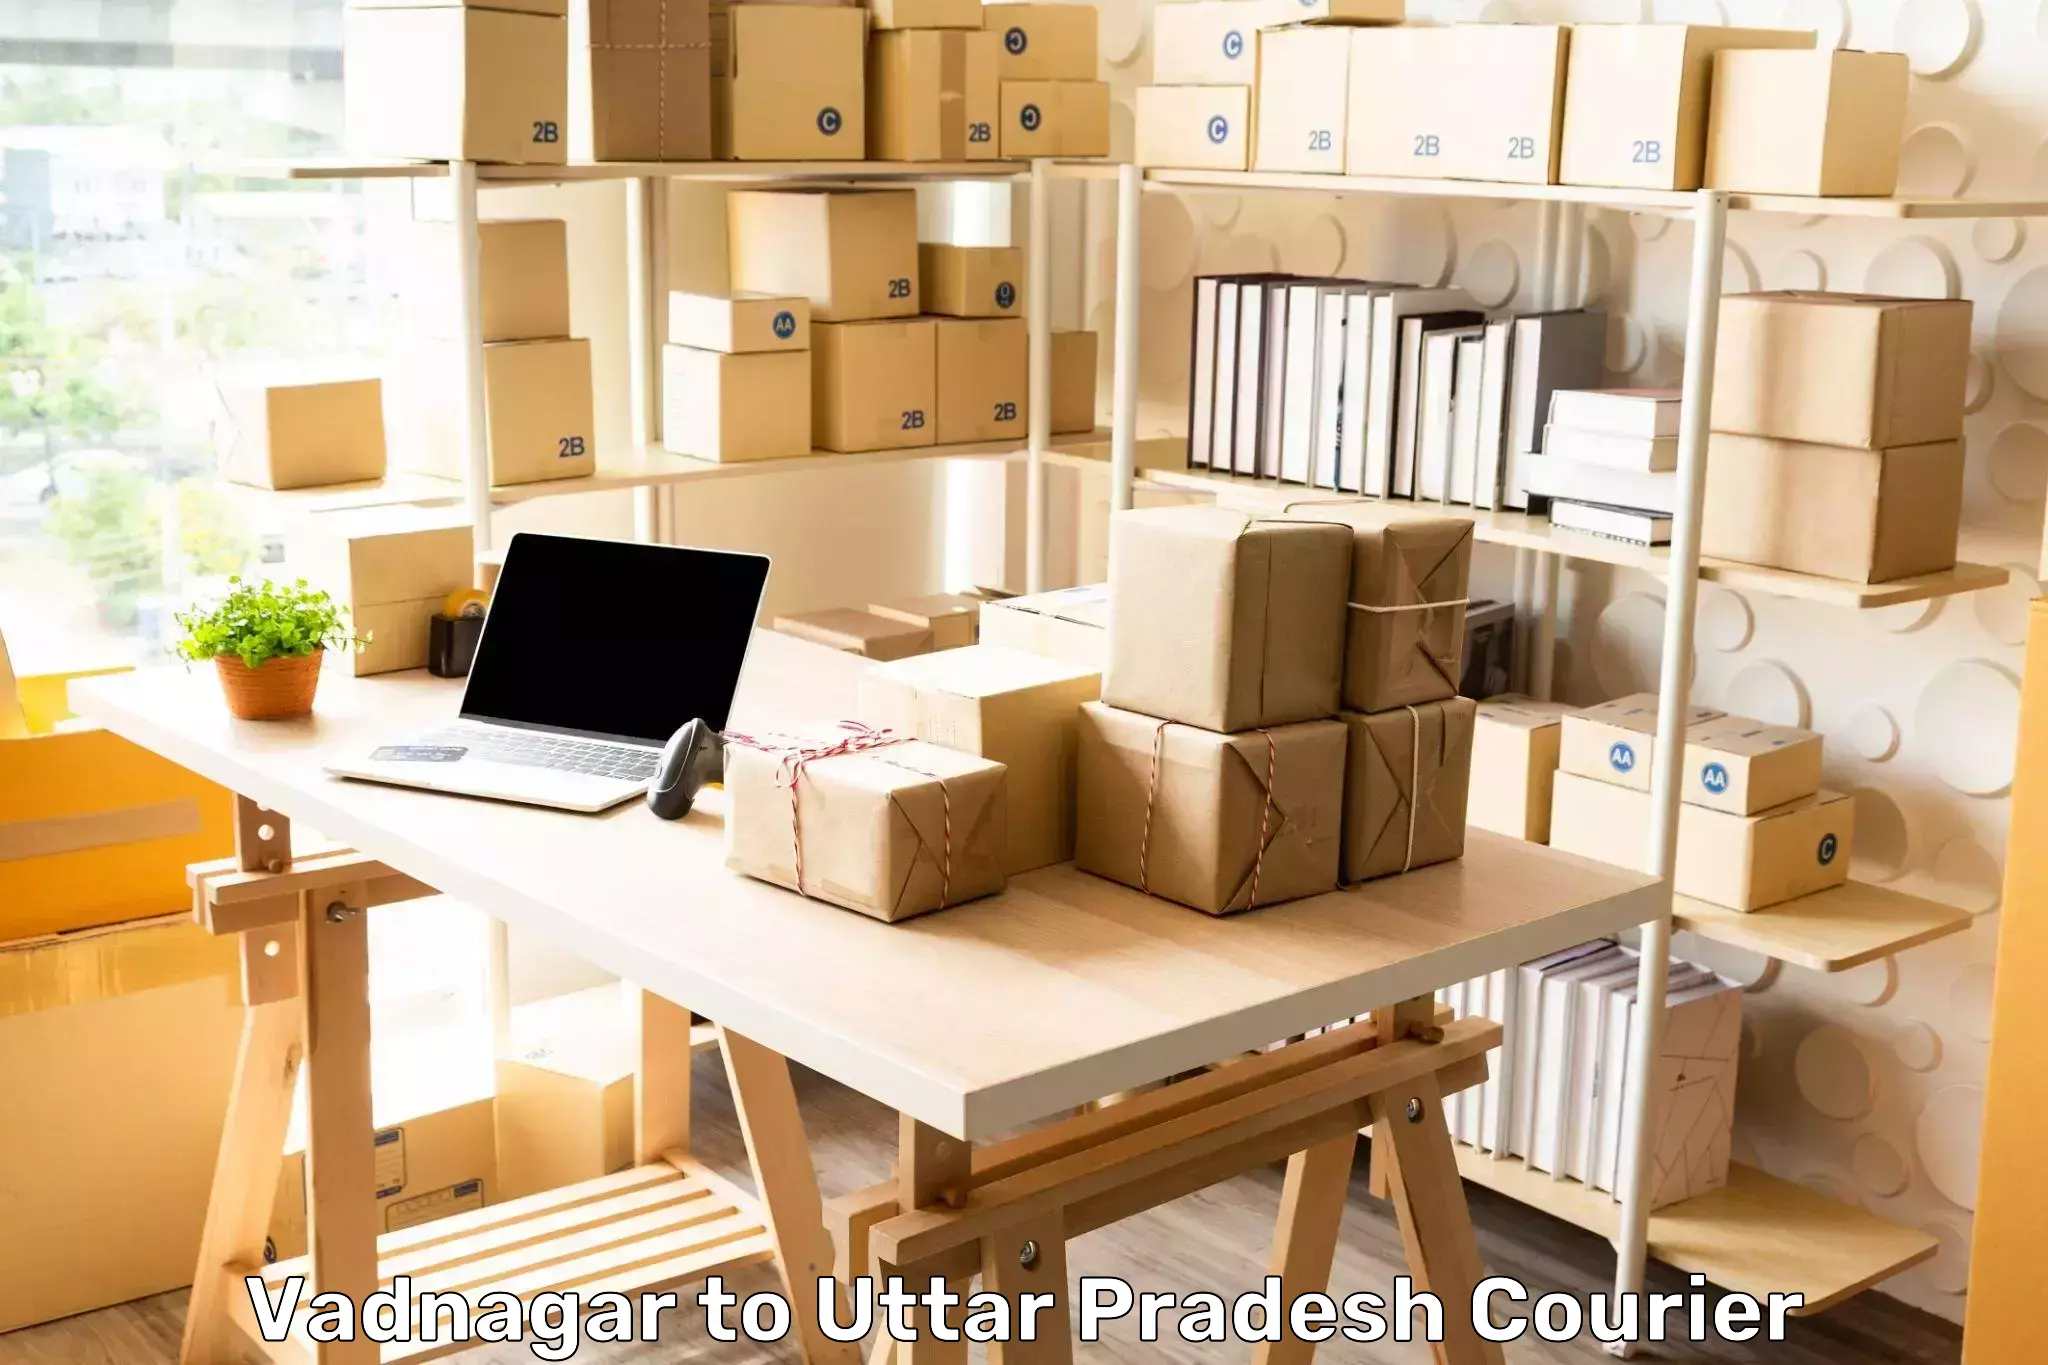 Custom logistics solutions Vadnagar to Tulsipur